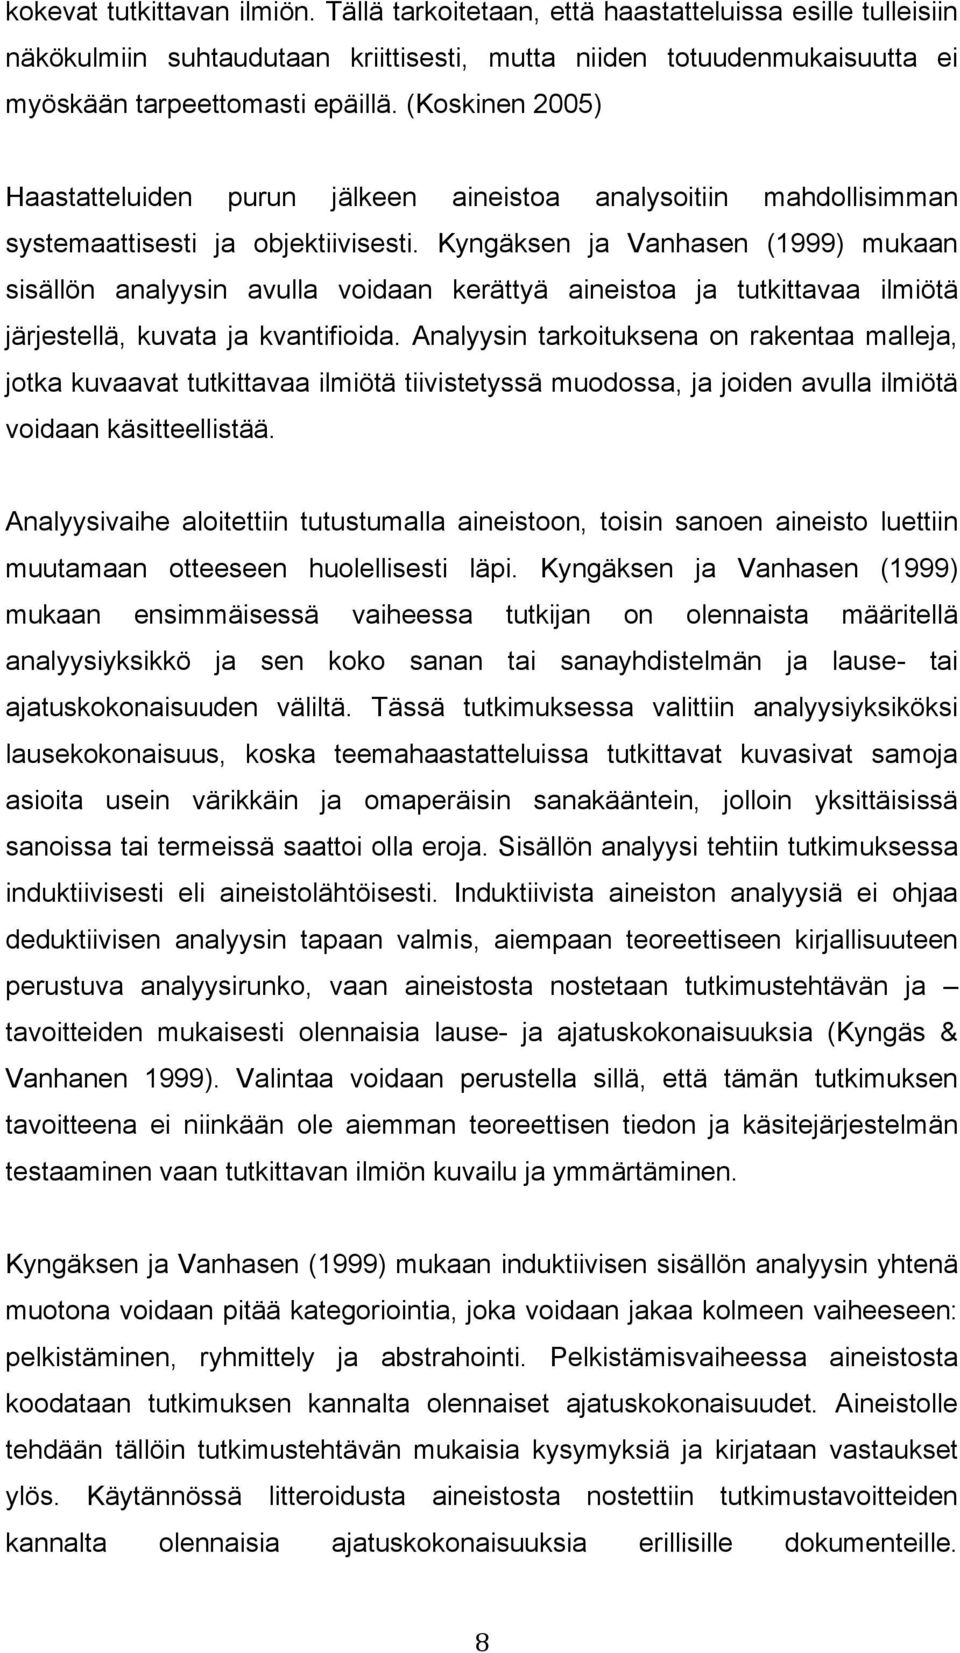 Kyngäksen ja Vanhasen (1999) mukaan sisällön analyysin avulla voidaan kerättyä aineistoa ja tutkittavaa ilmiötä järjestellä, kuvata ja kvantifioida.